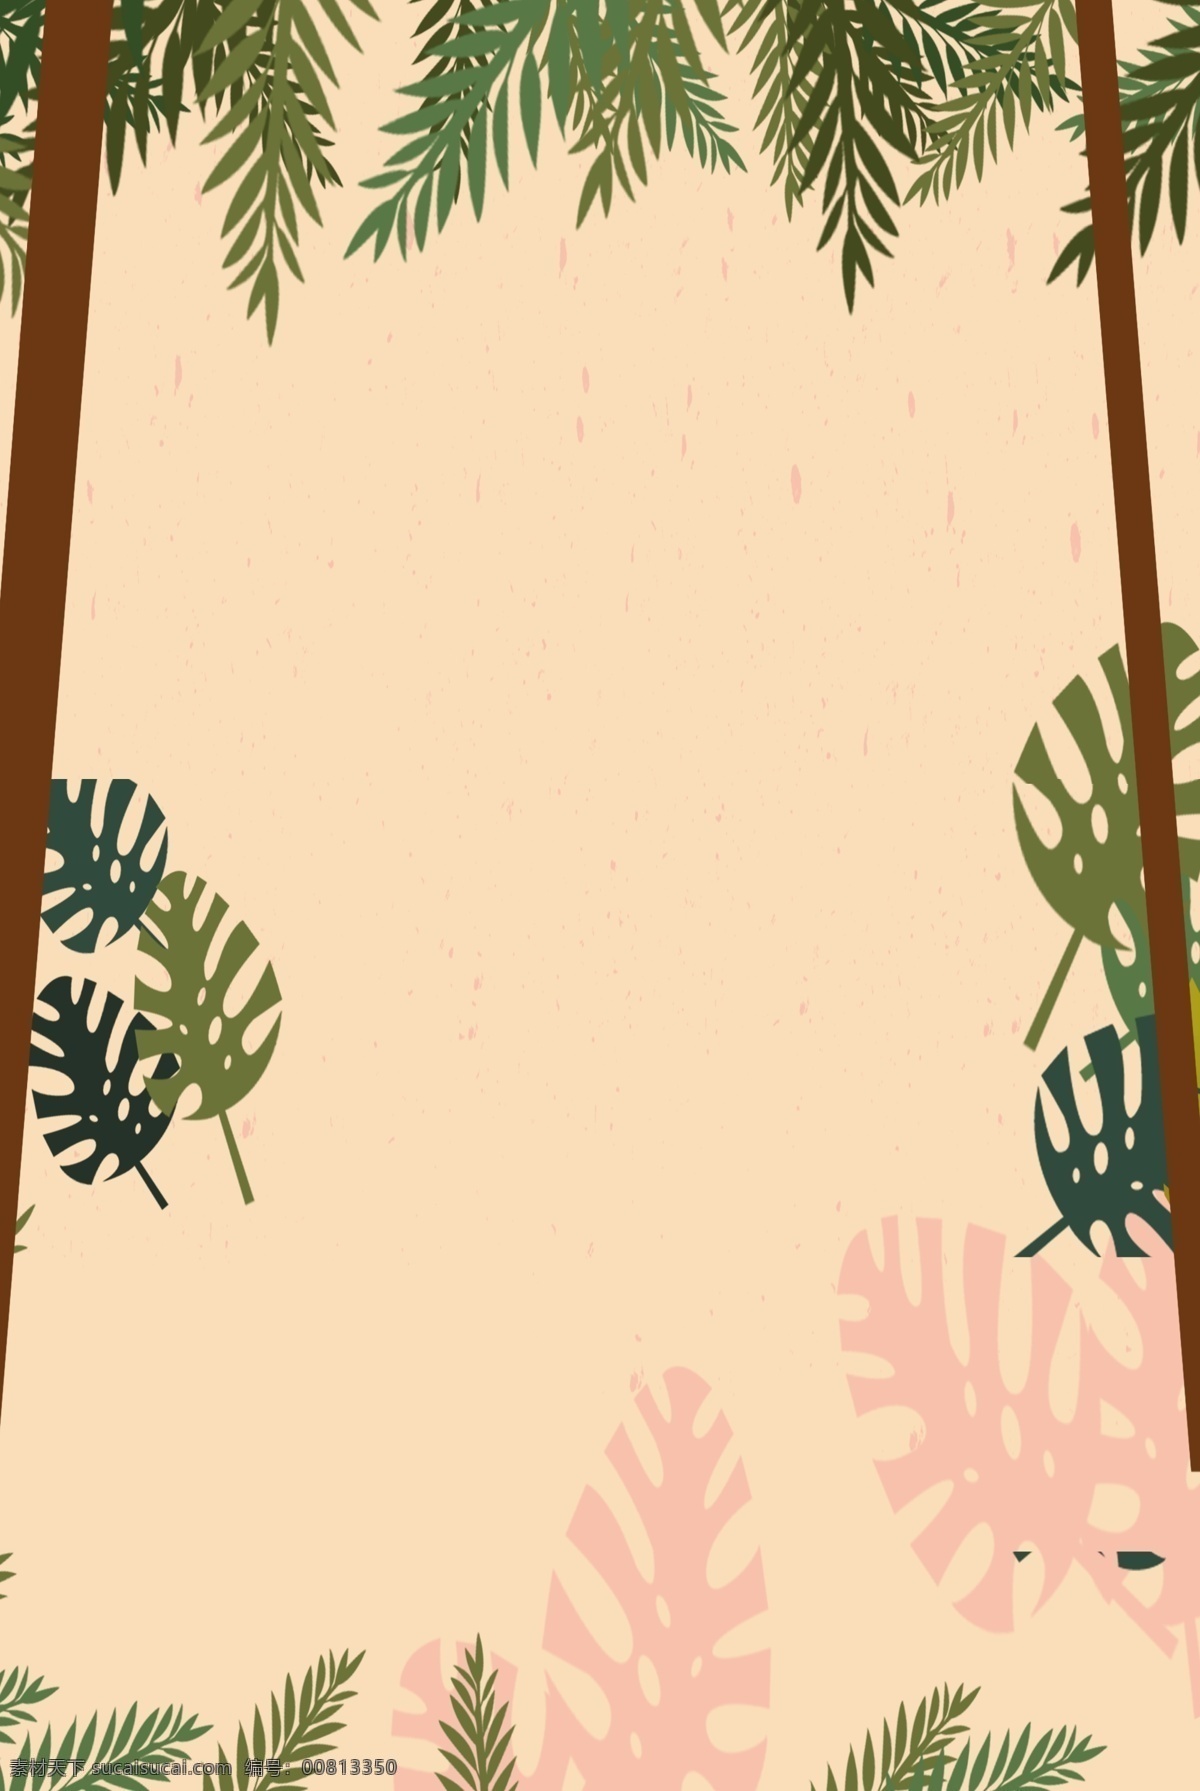 文艺 清新 植物 简约 卡通 背景 叶子 棕榈树 棕榈树叶